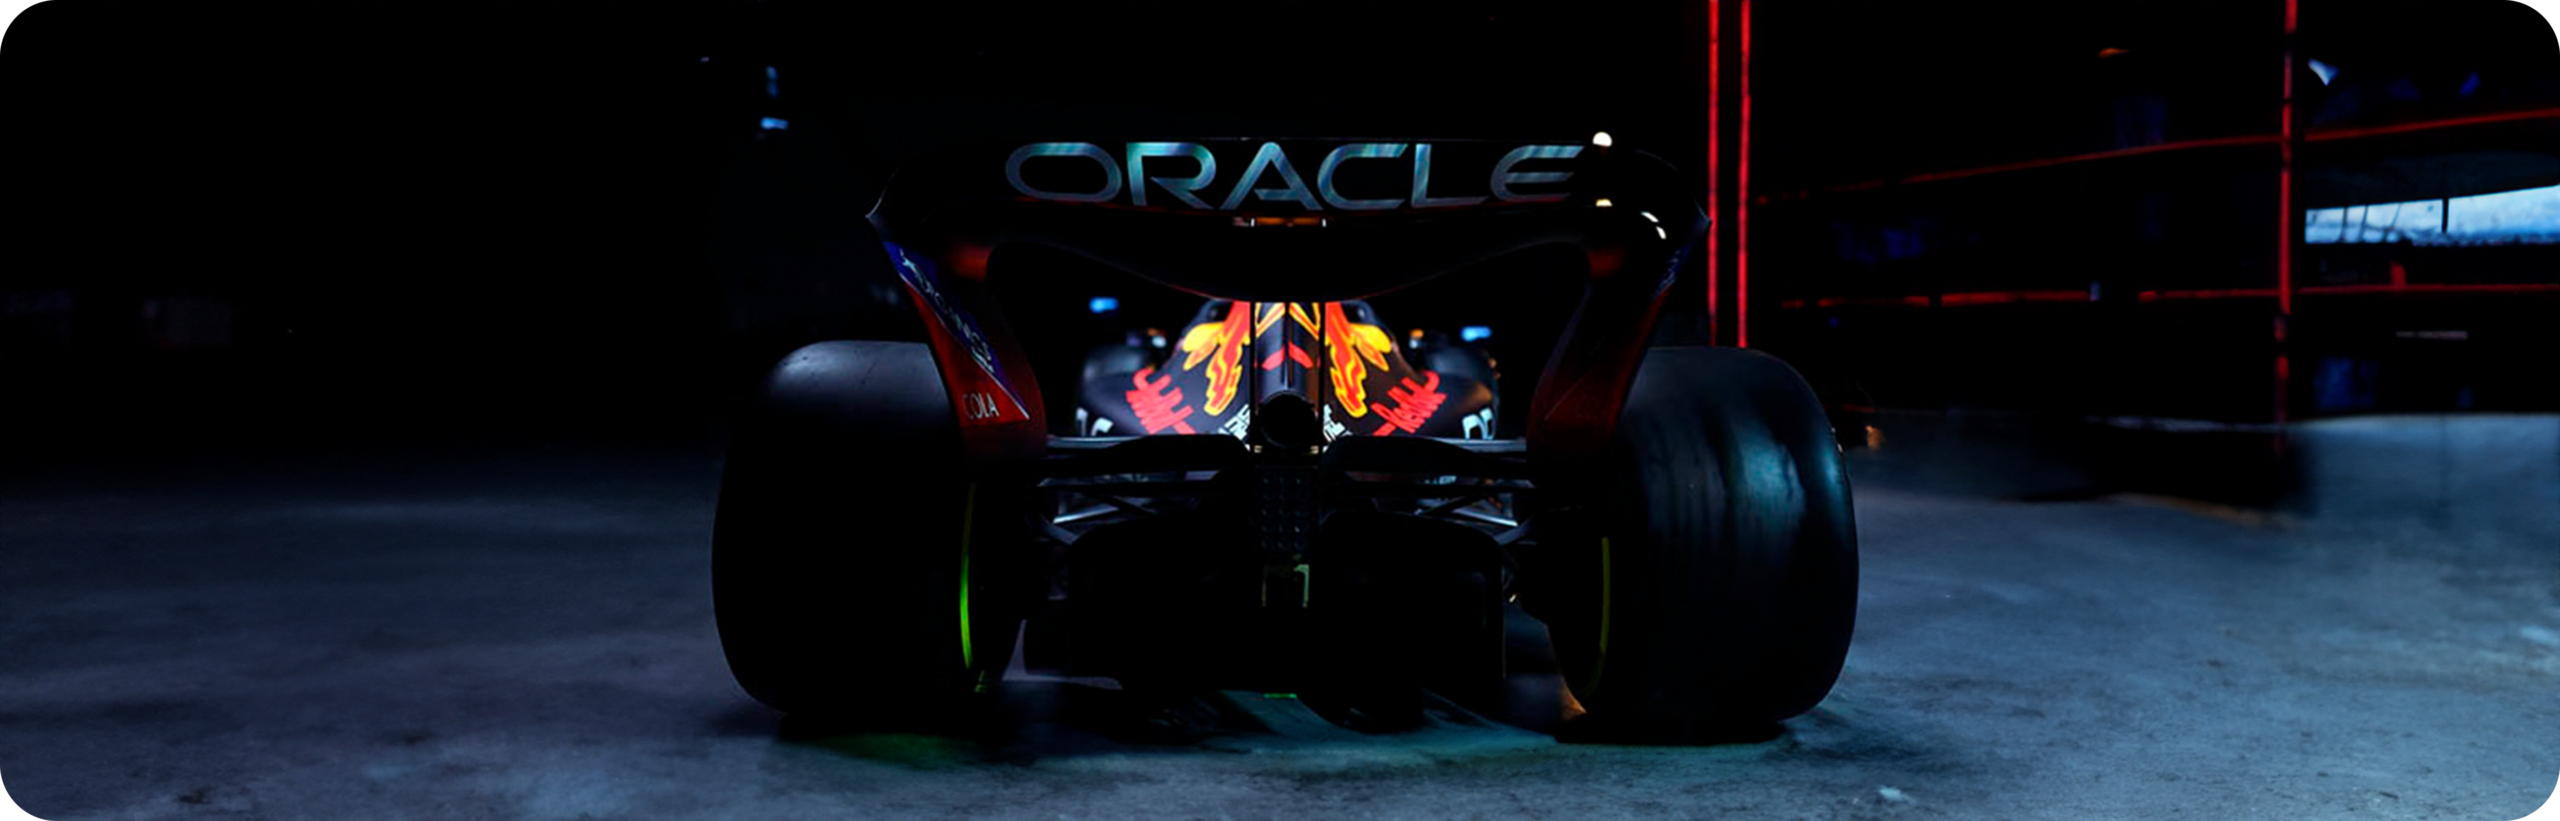 Carro de formula 1 com destaque do patrocínio da Oracle em um ambiente profissional